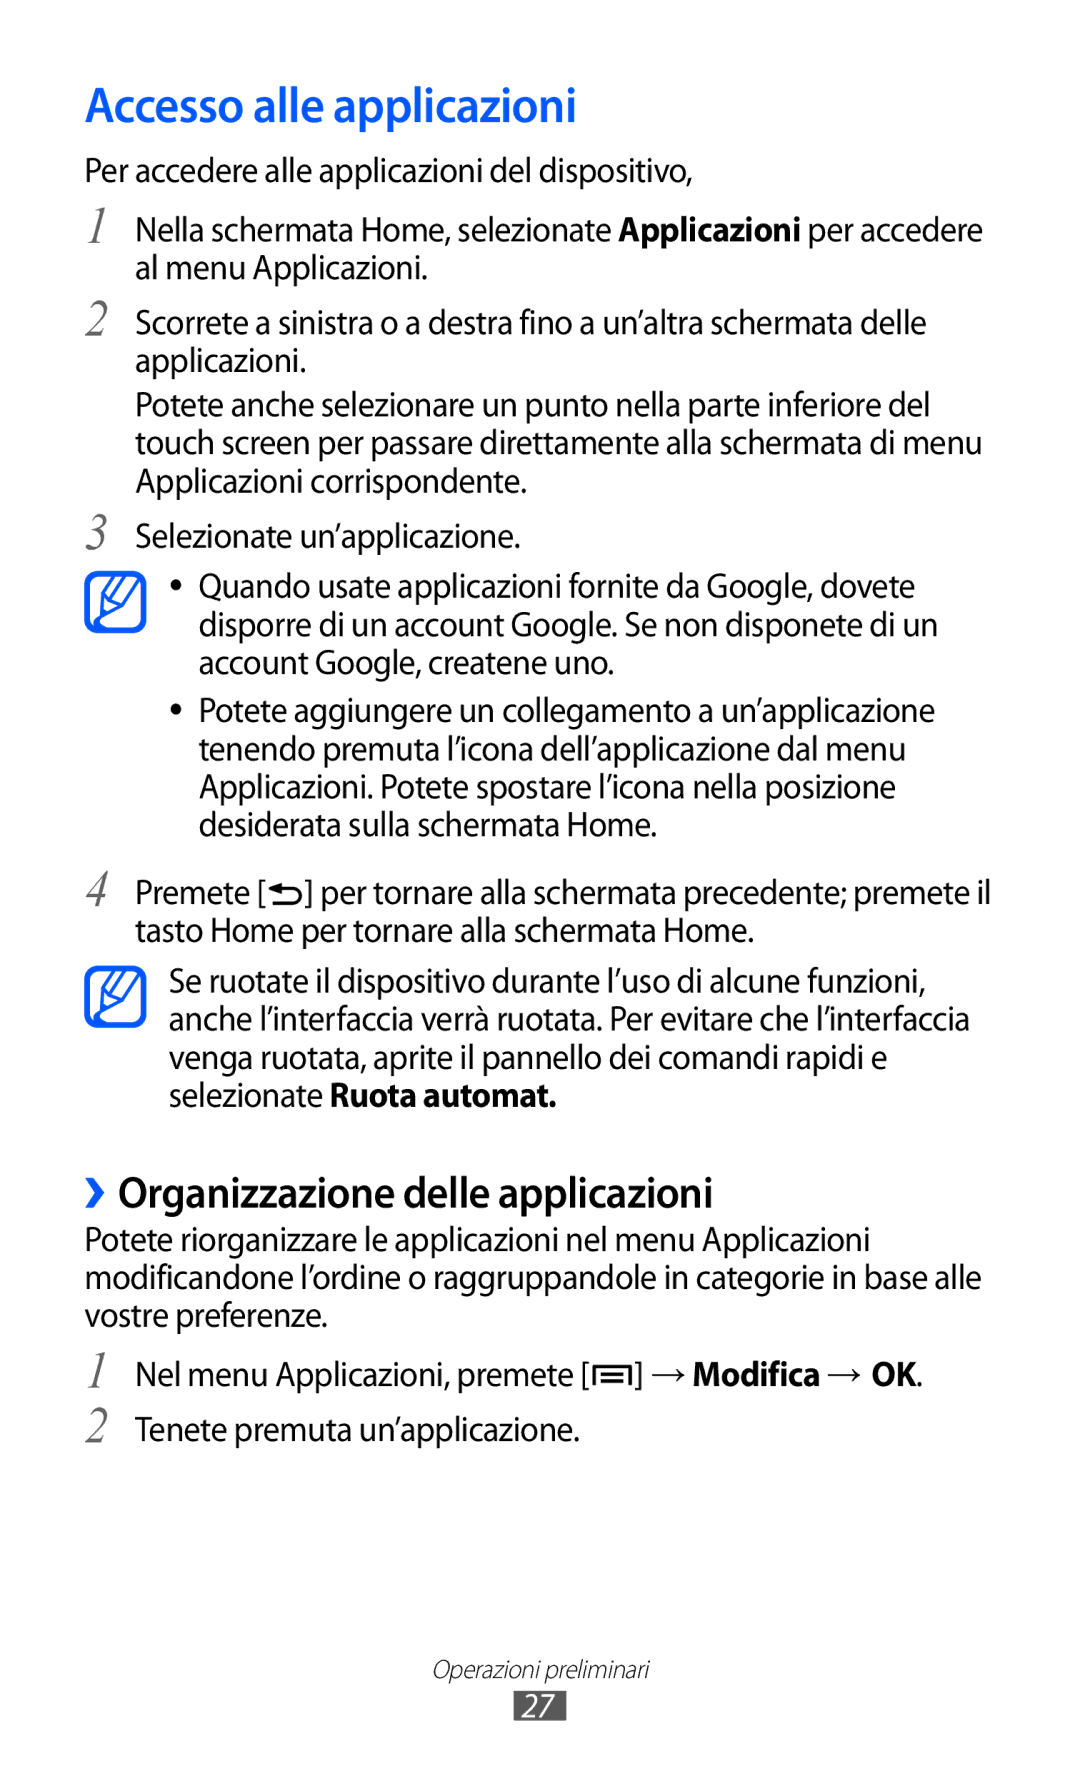 Samsung GT-I8150FKAITV, GT-I8150EWAITV manual Accesso alle applicazioni, ››Organizzazione delle applicazioni 